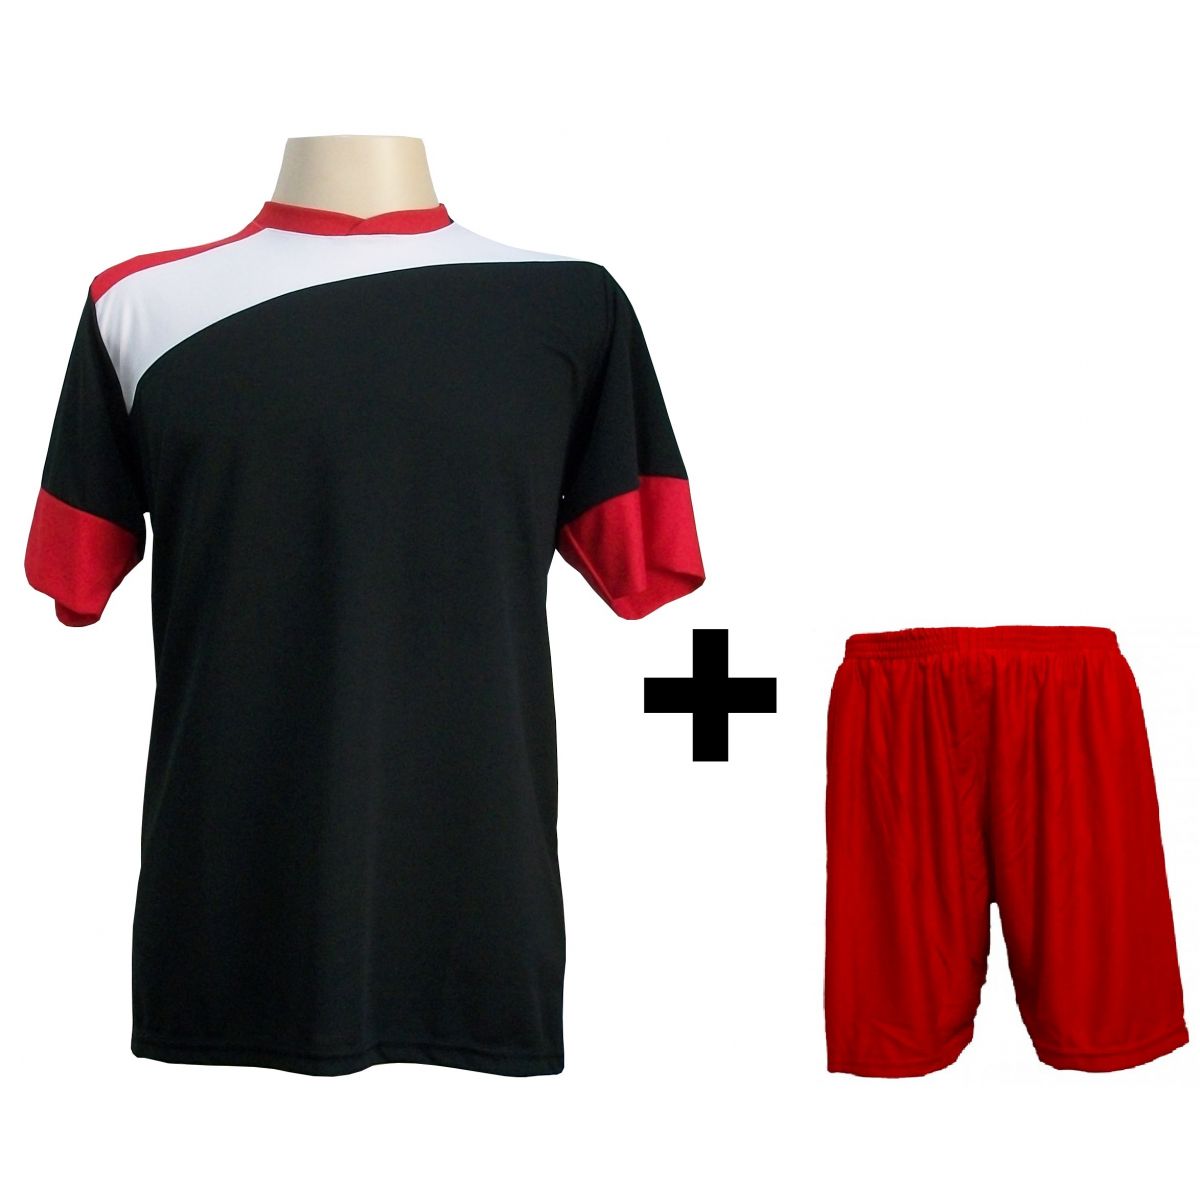 Uniforme Esportivo com 14 camisas modelo Sporting Preto/Branco/Vermelho + 14 calções modelo Madrid Vermelho + Brindes